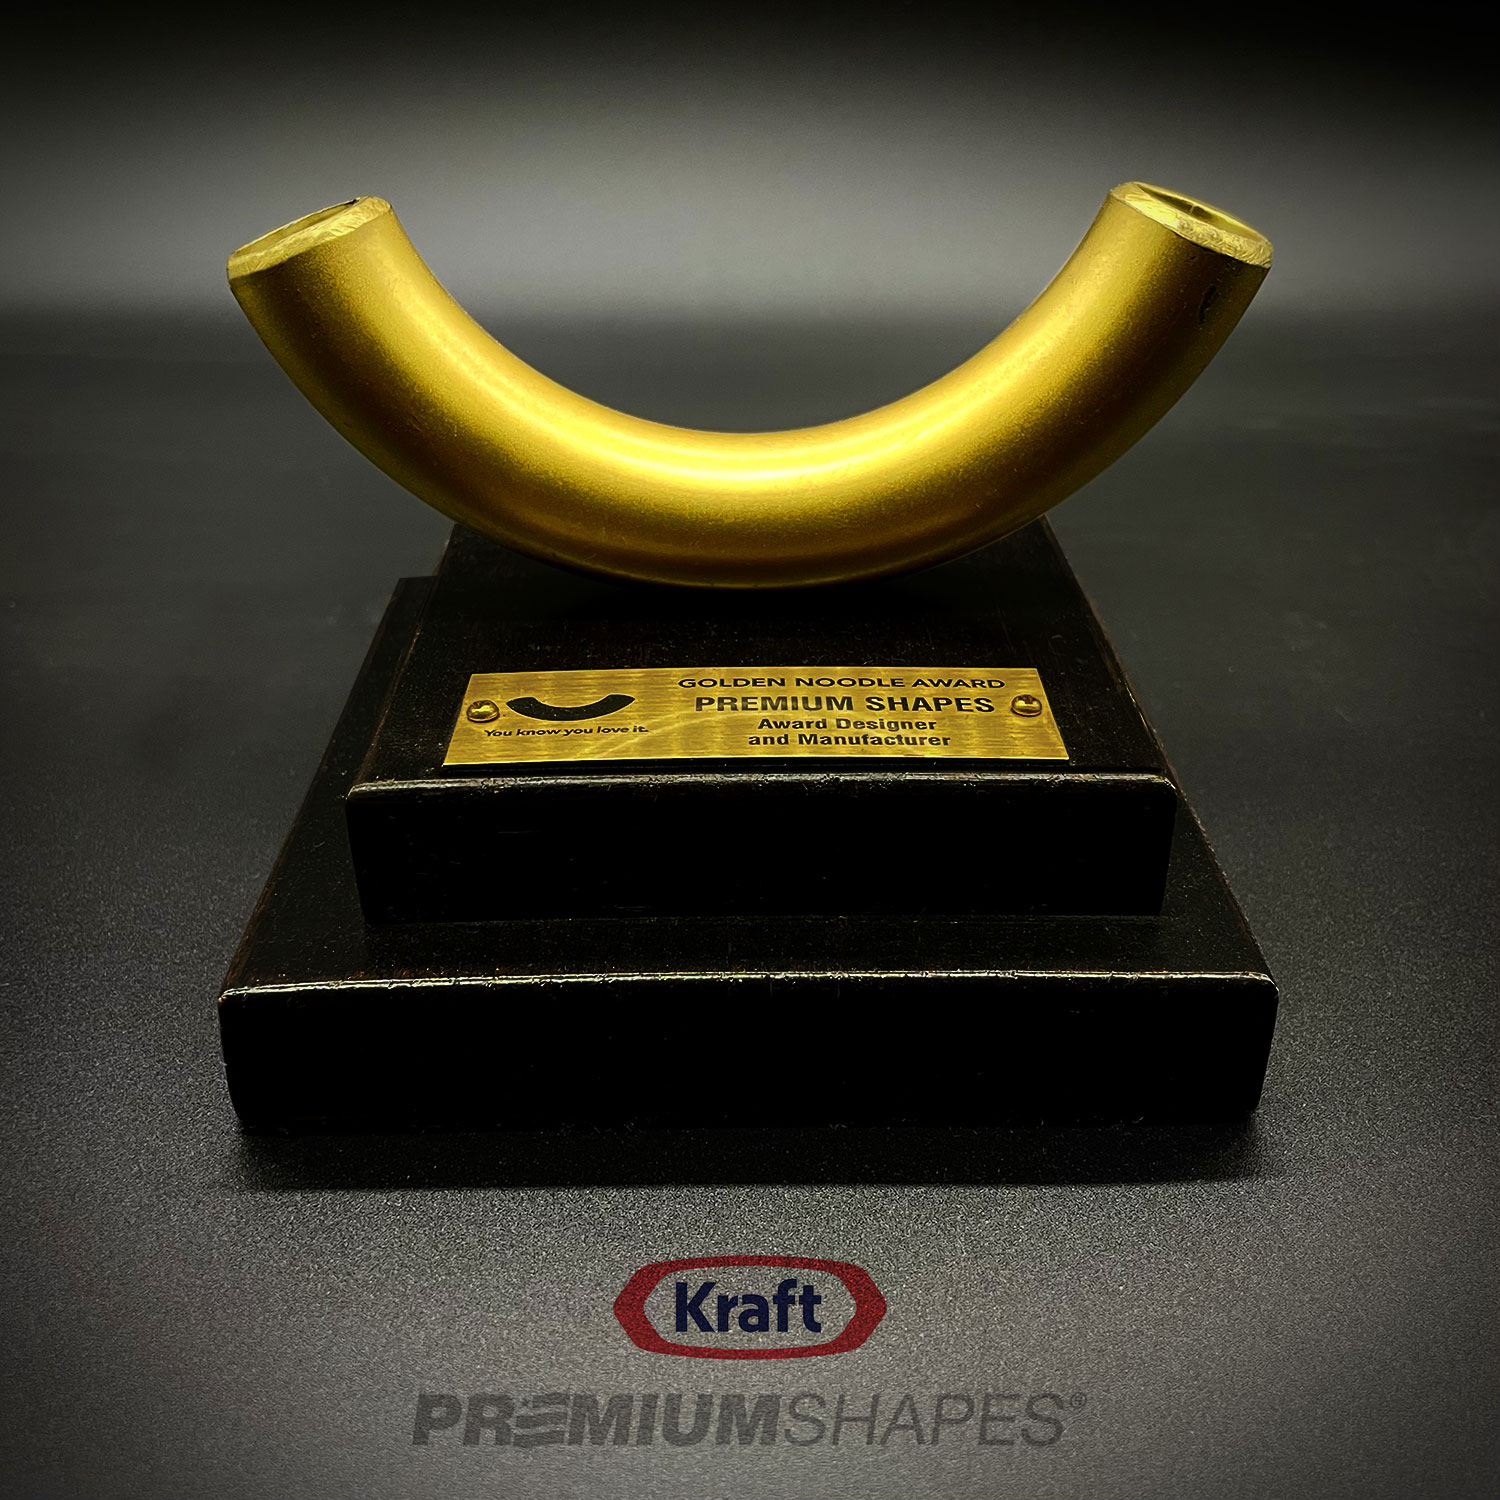 Kraft Golden Noodle Award